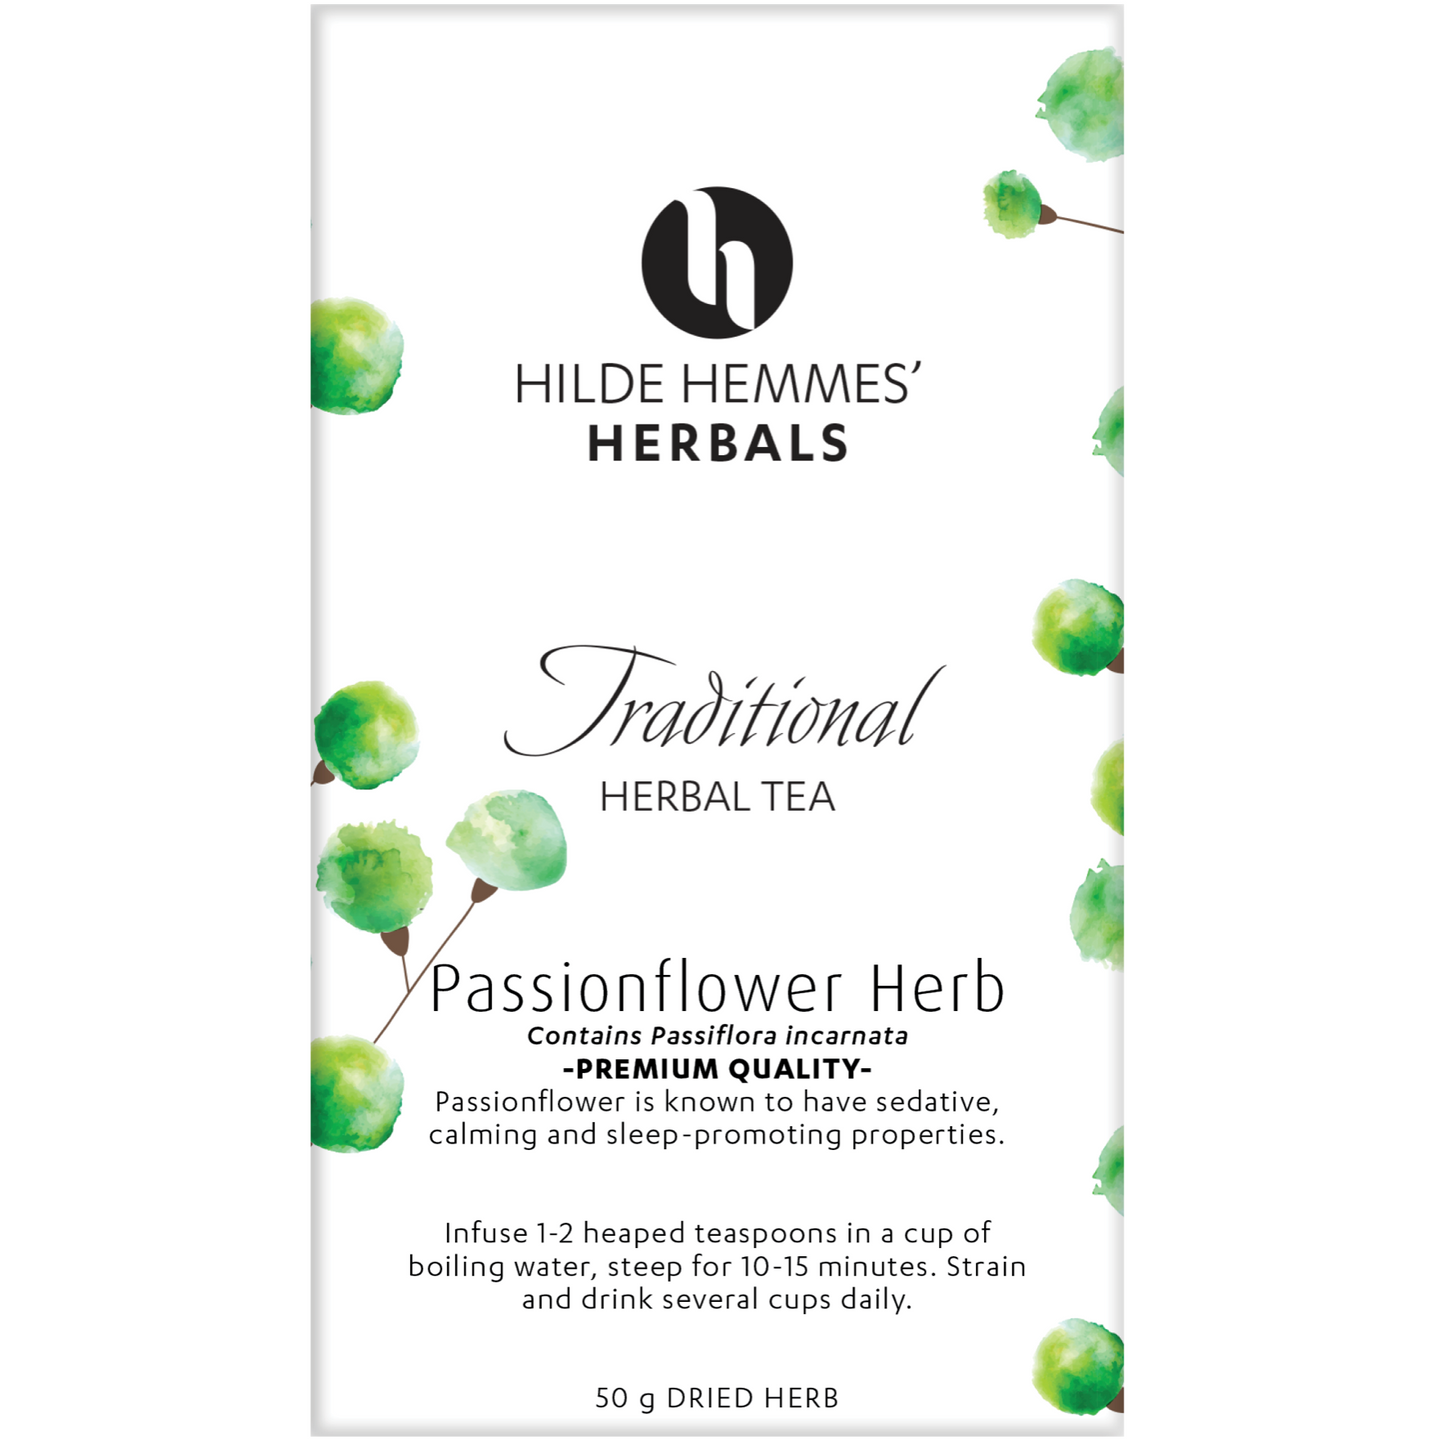 Hilde Hemmes Herbal's Tea 50g (Loose Leaf) Or 30 Tea Bags, Passionflower